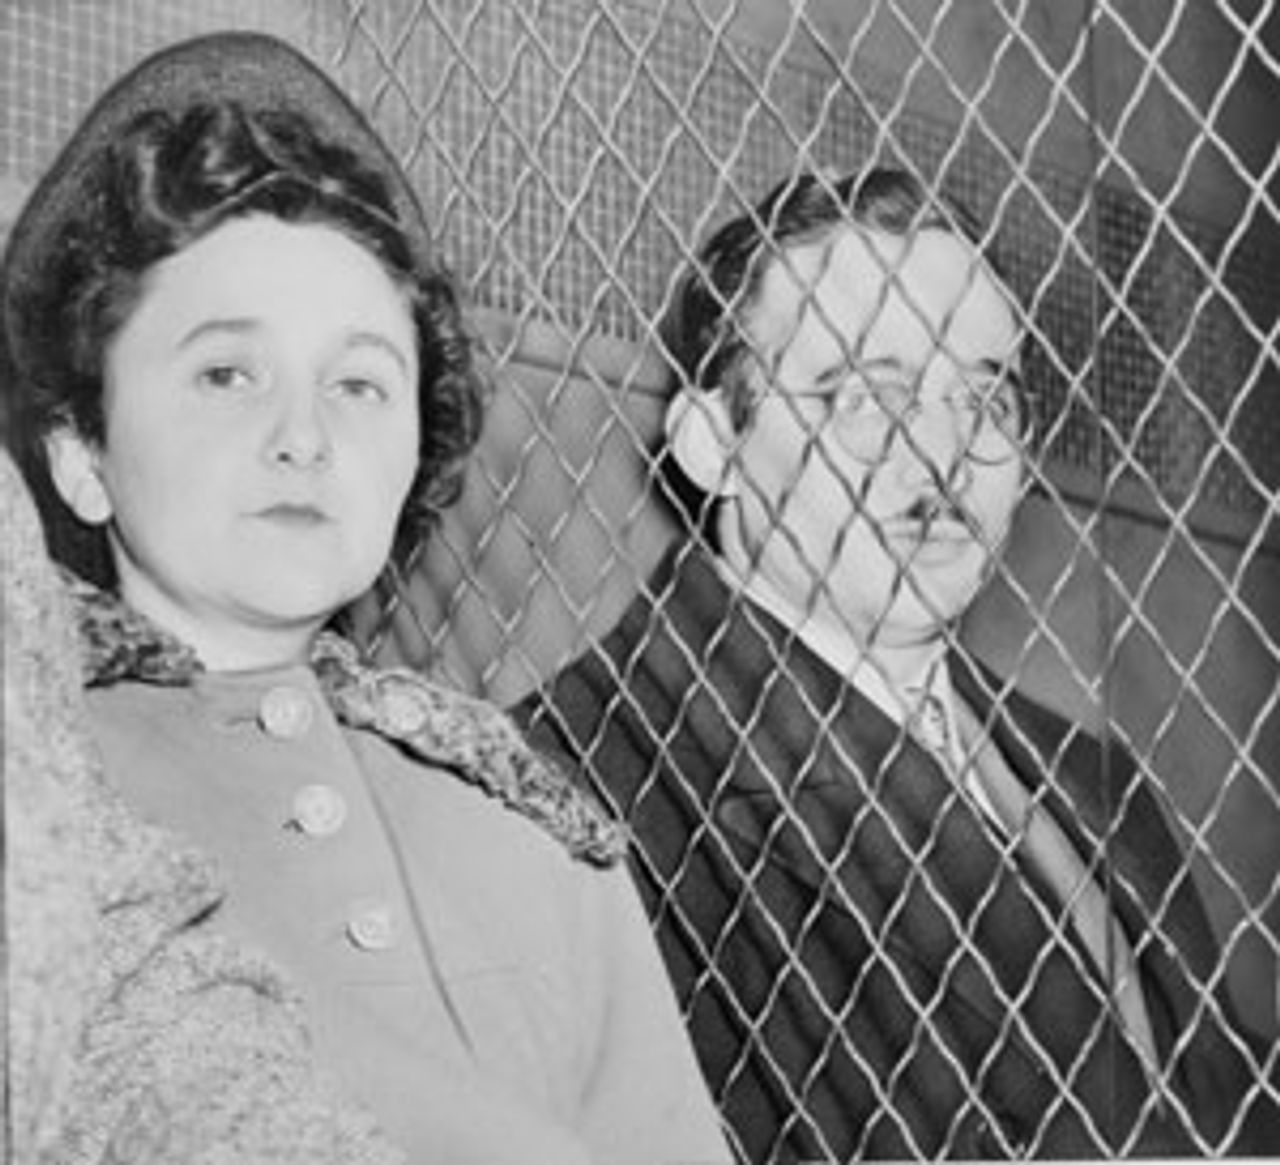 Ethel und Julius Rosenberg